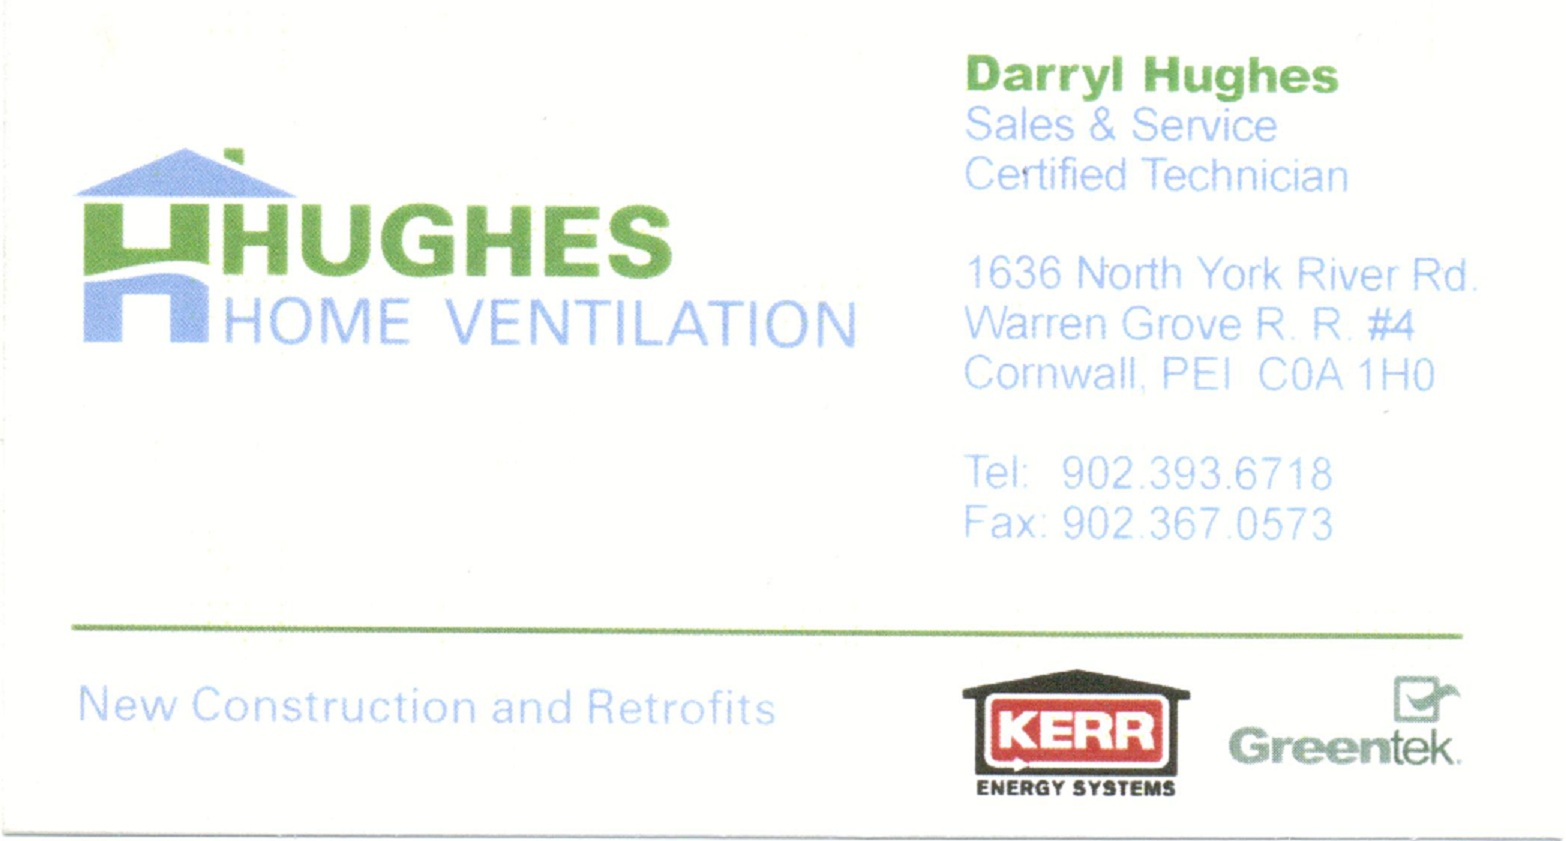 Hughes Home Ventilation